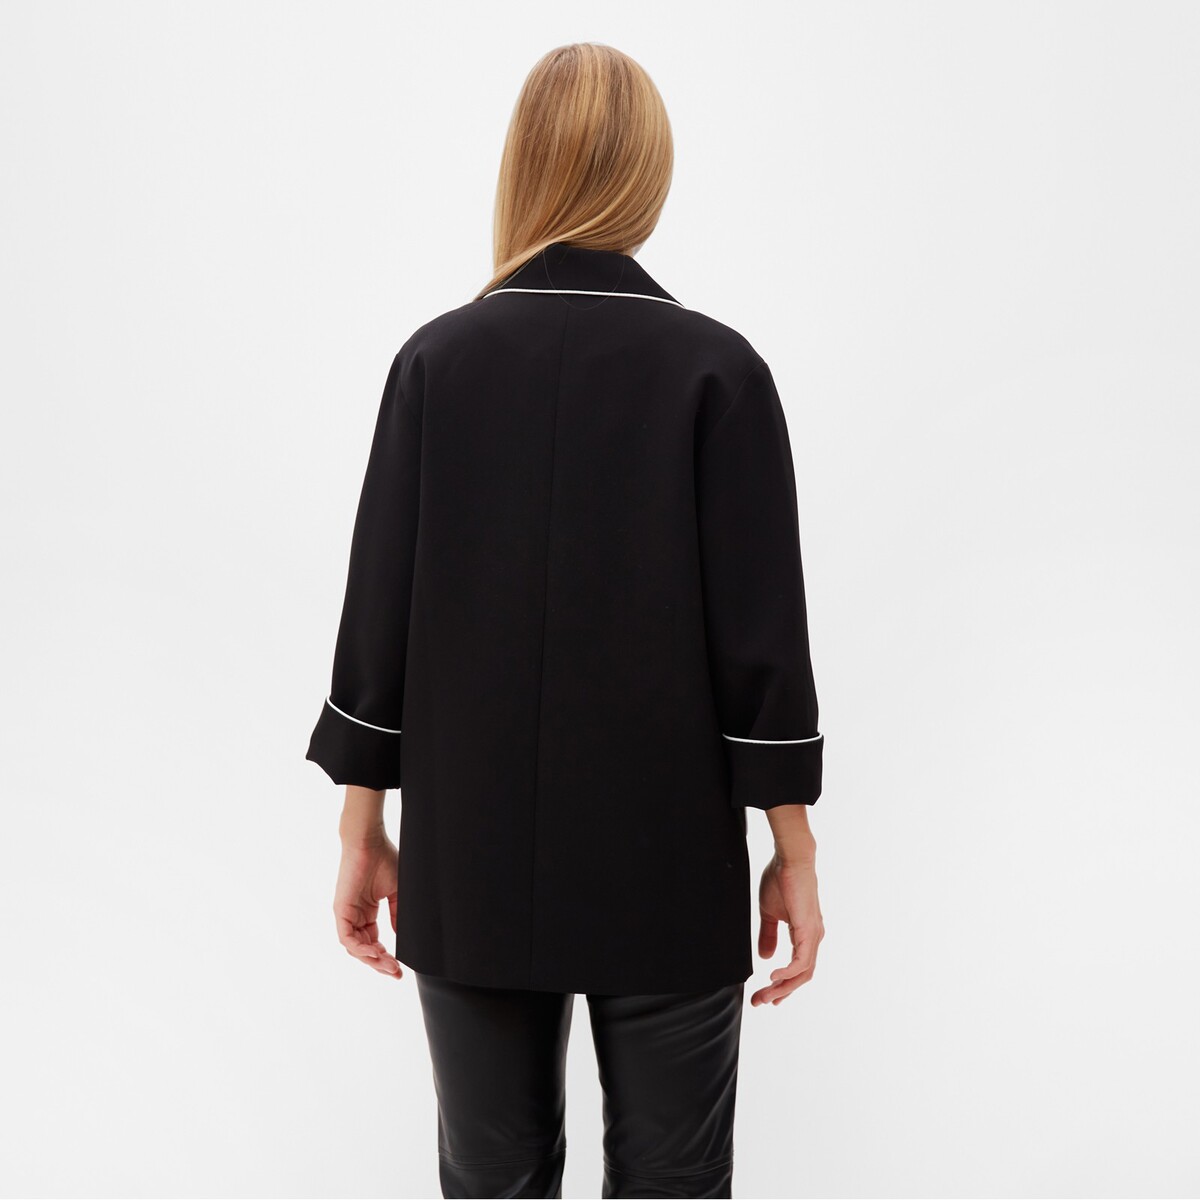 Пиджак MINAKU, размер 42, цвет черный 06501701 - фото 4